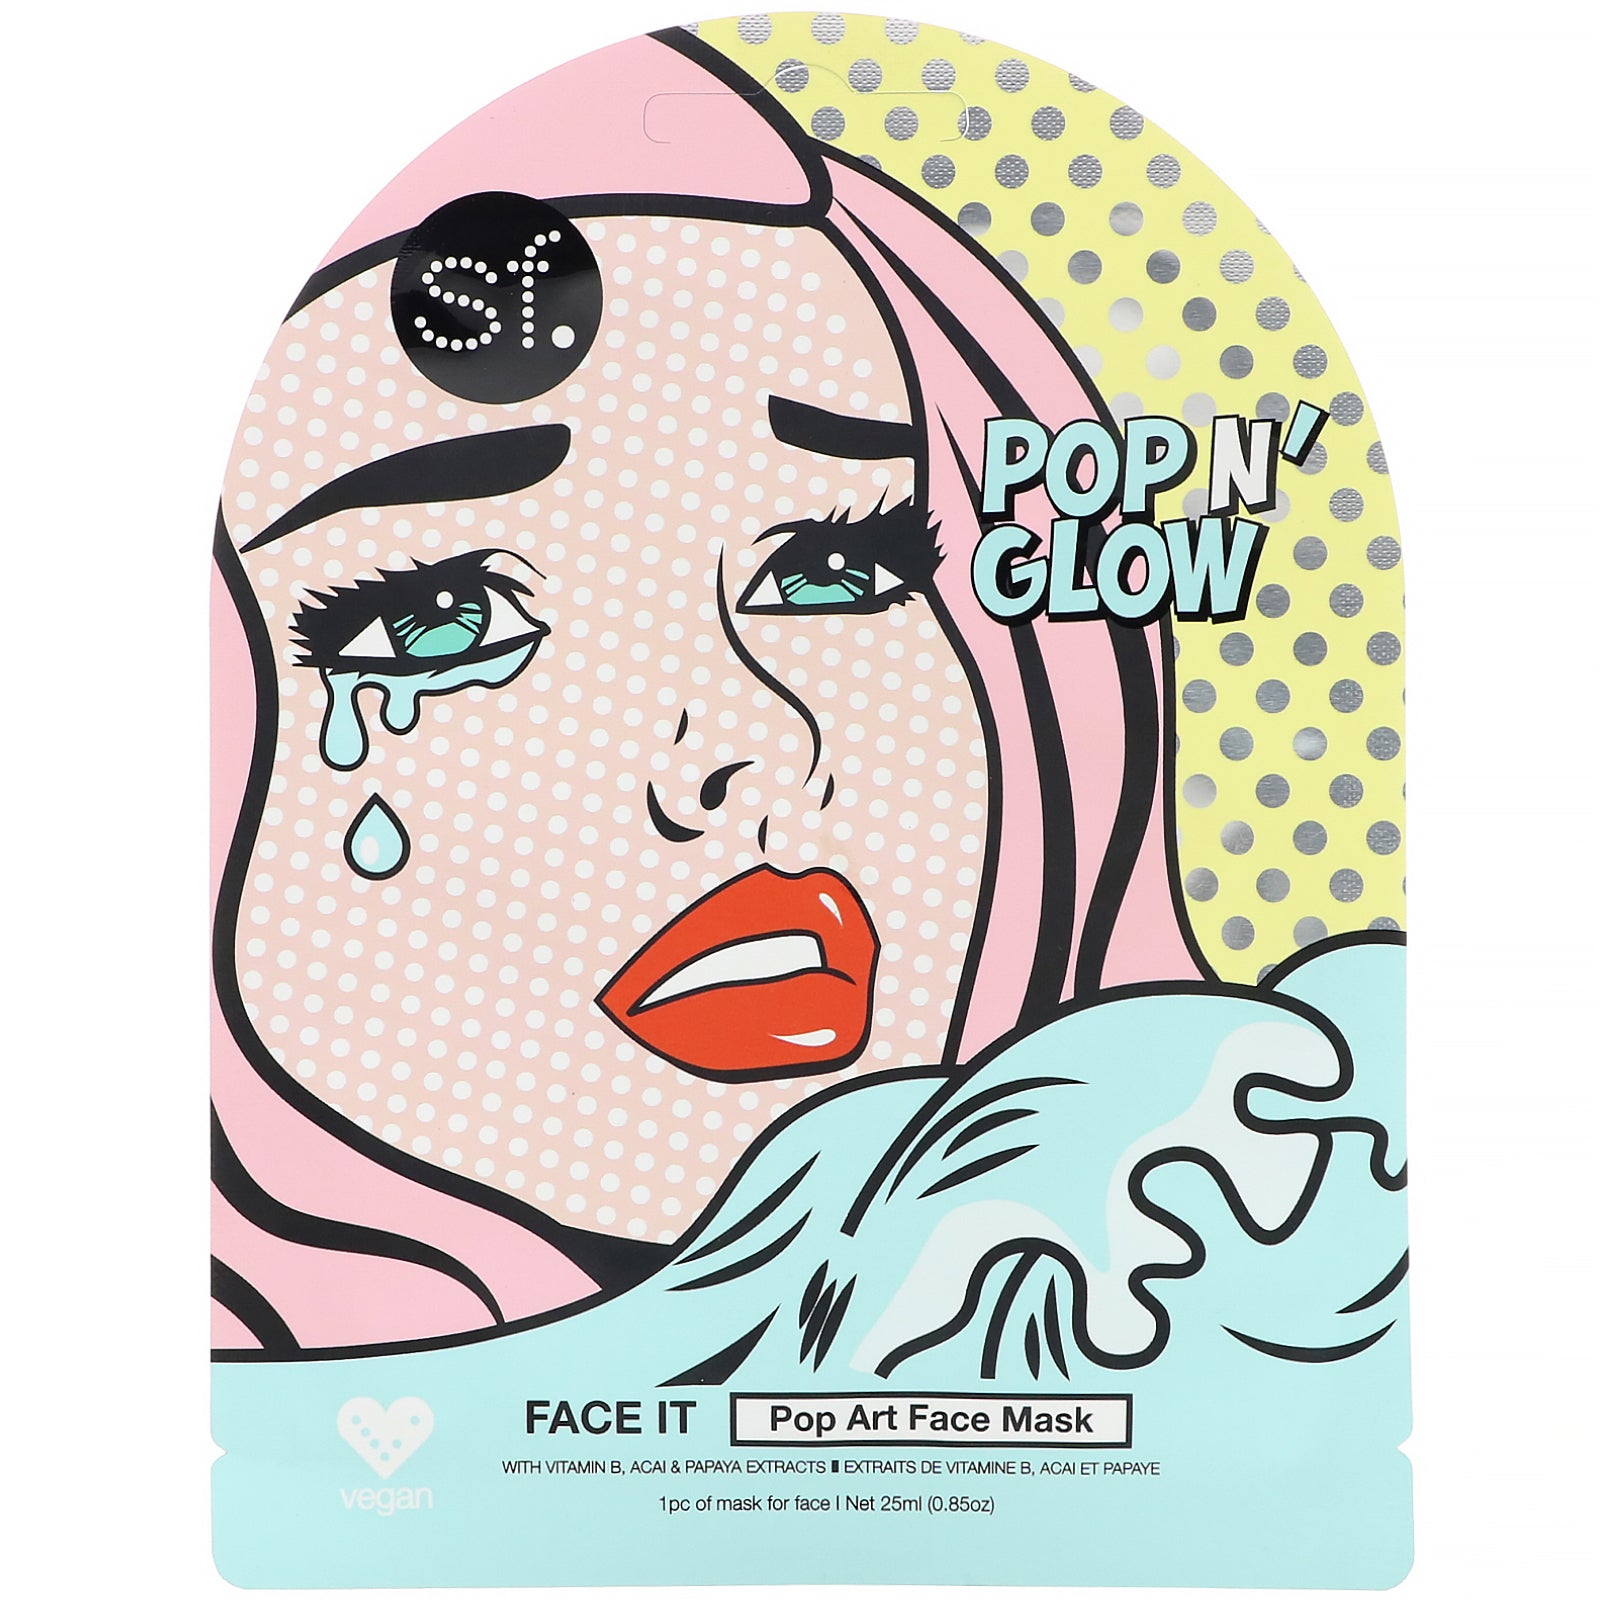 SFGlow, POP n' Glow, Face It, Pop Art Face Mask, 1 Sheet, 0.85 oz (25 ml)